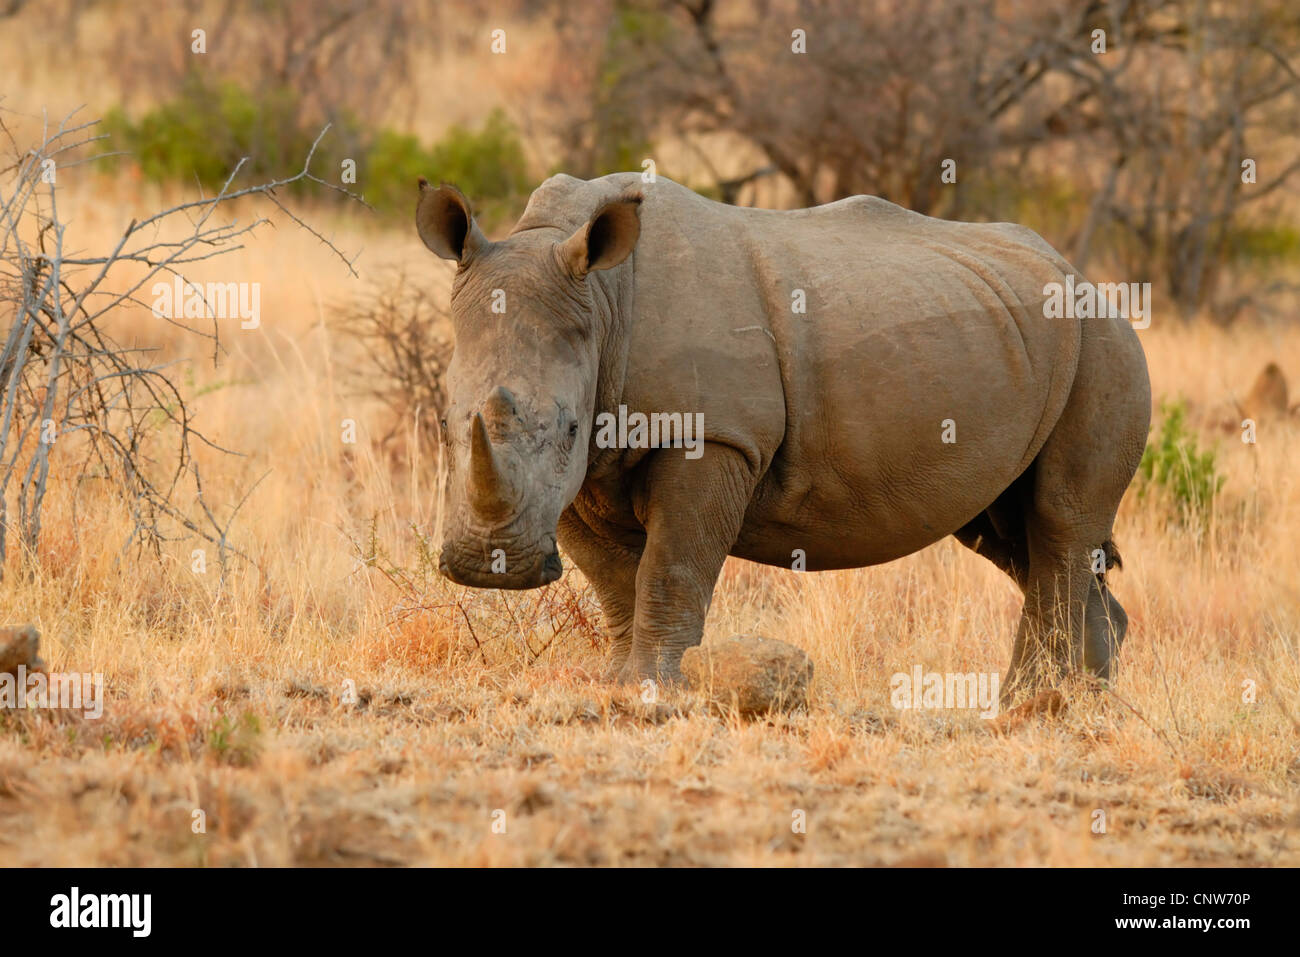 white rhinoceros, square-lipped rhinoceros, grass rhinoceros (Ceratotherium simum), standing in belligerent in savanna Stock Photo